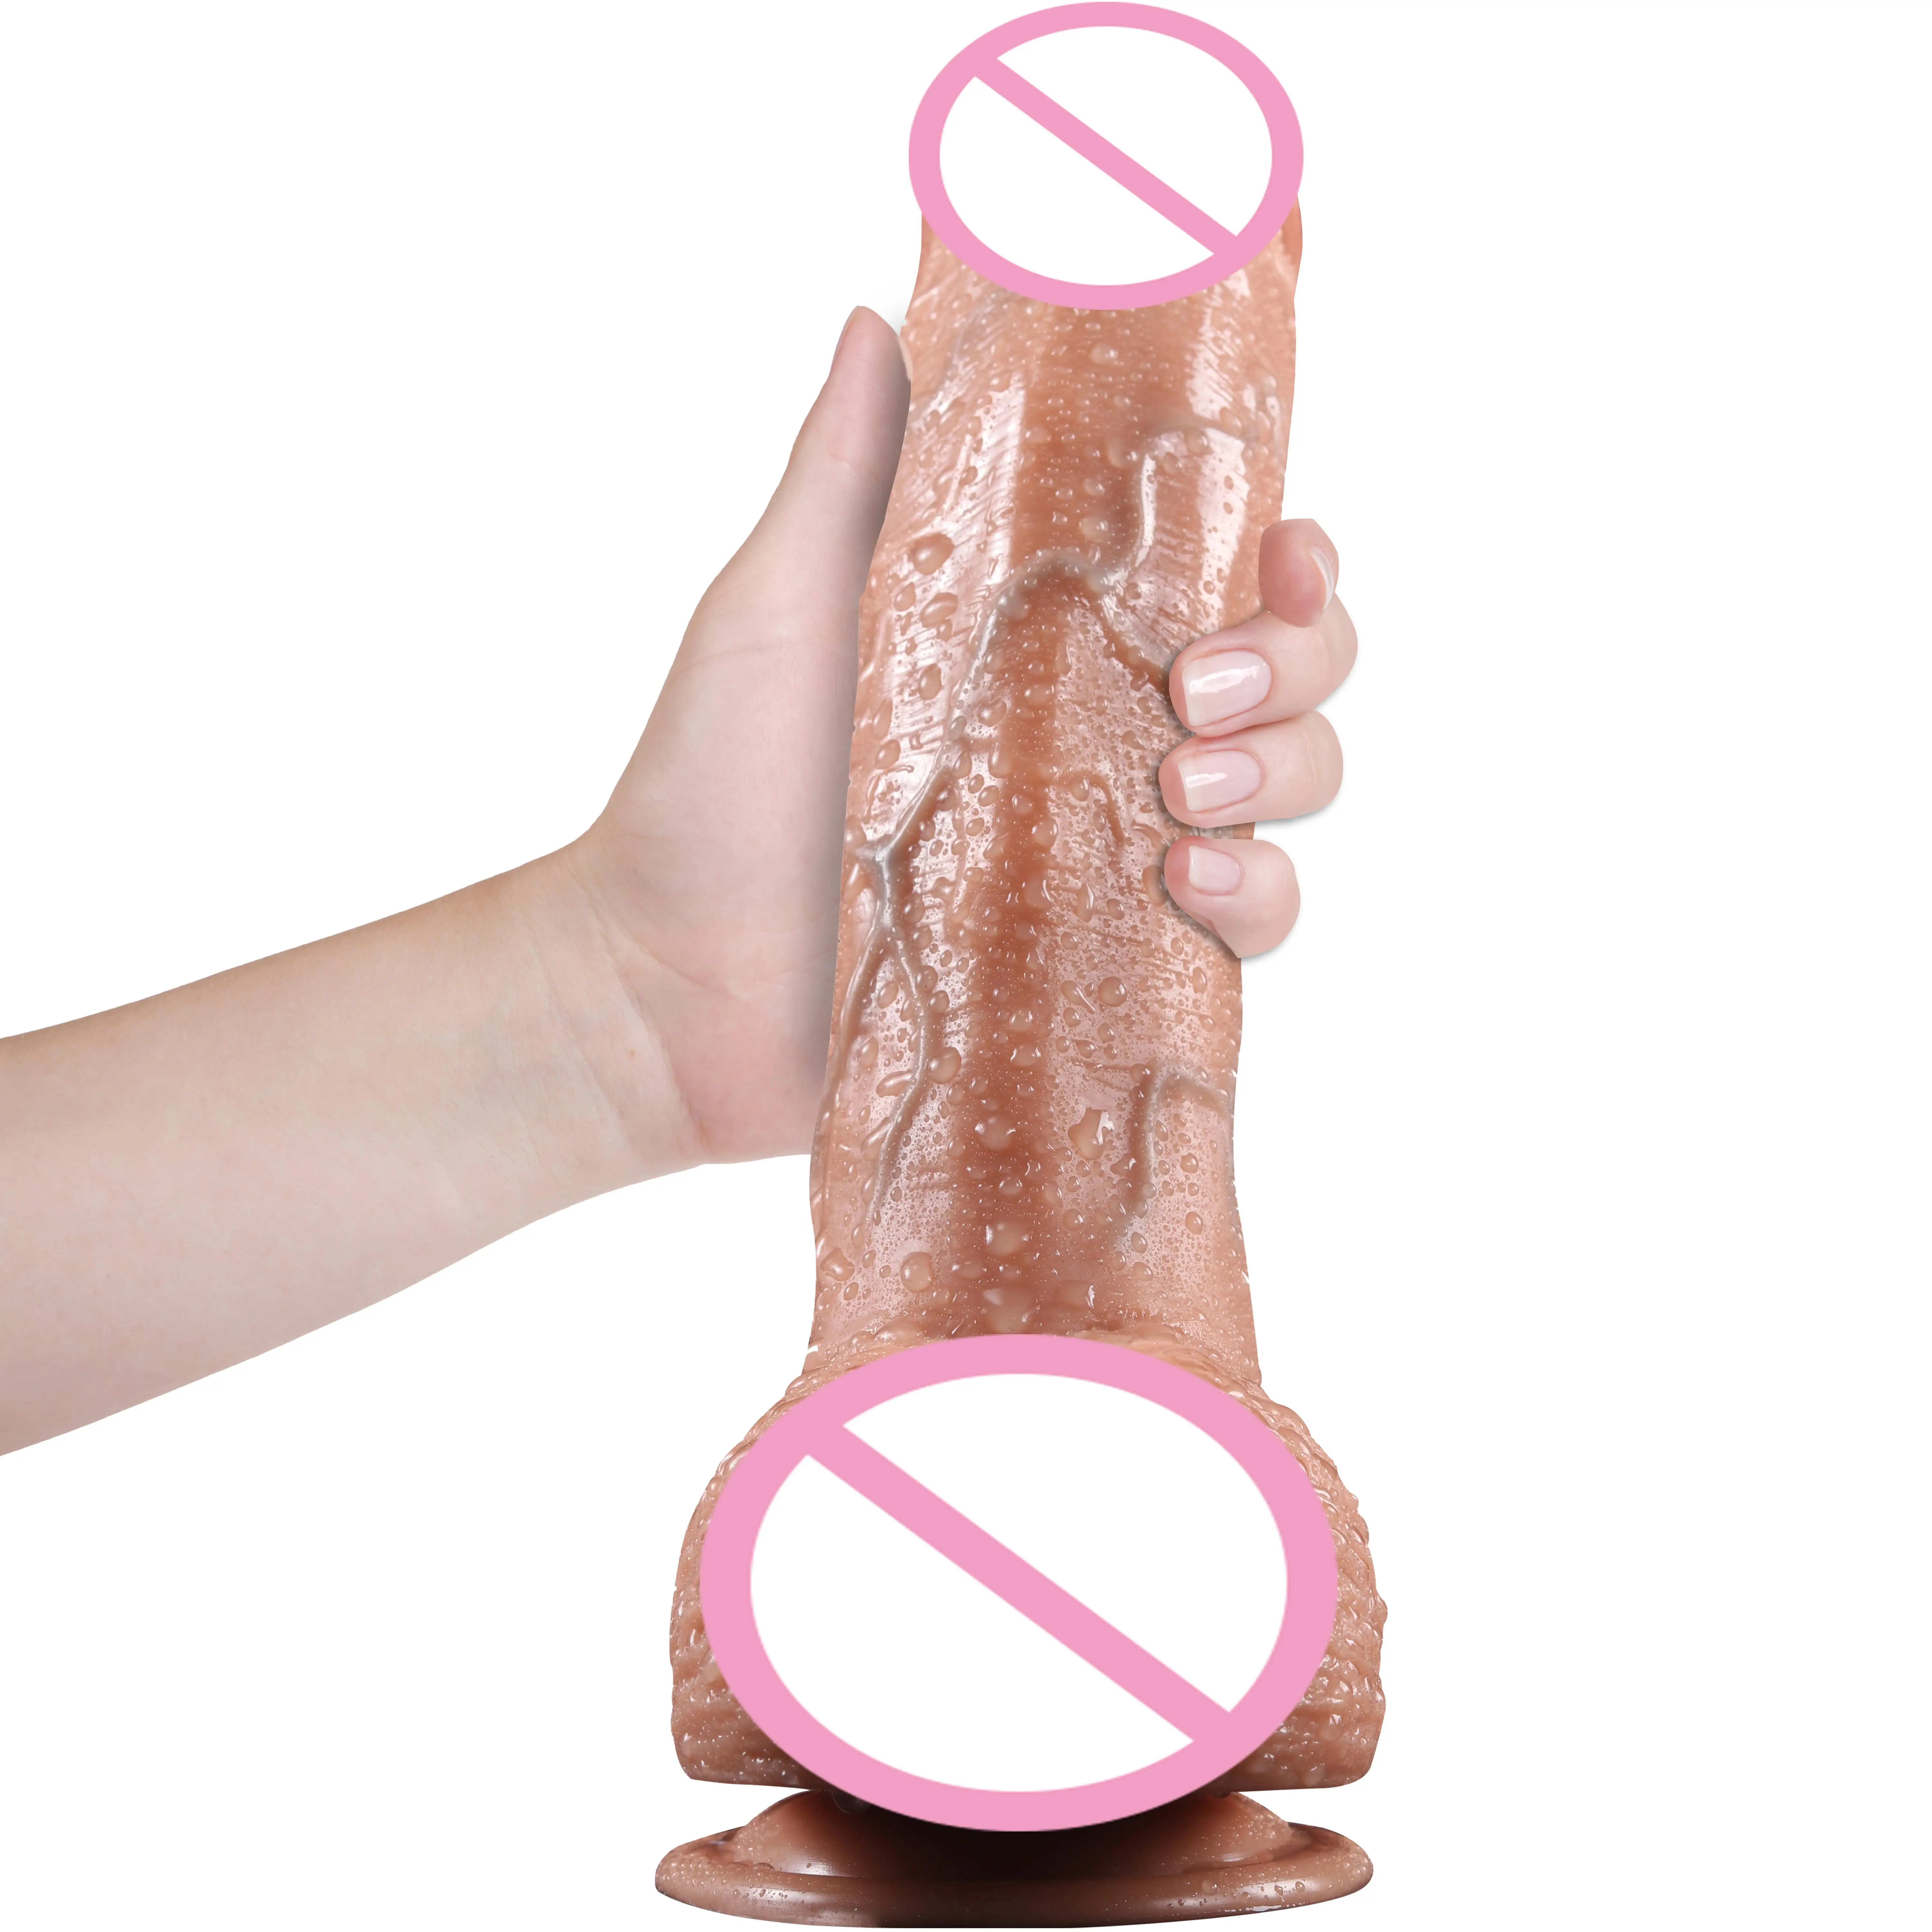 Adulti 9 pollici spessi realistici grandes silicone artificiale realistico pene sex toy dildo per donne signora masturbarsi giocattoli sessuali